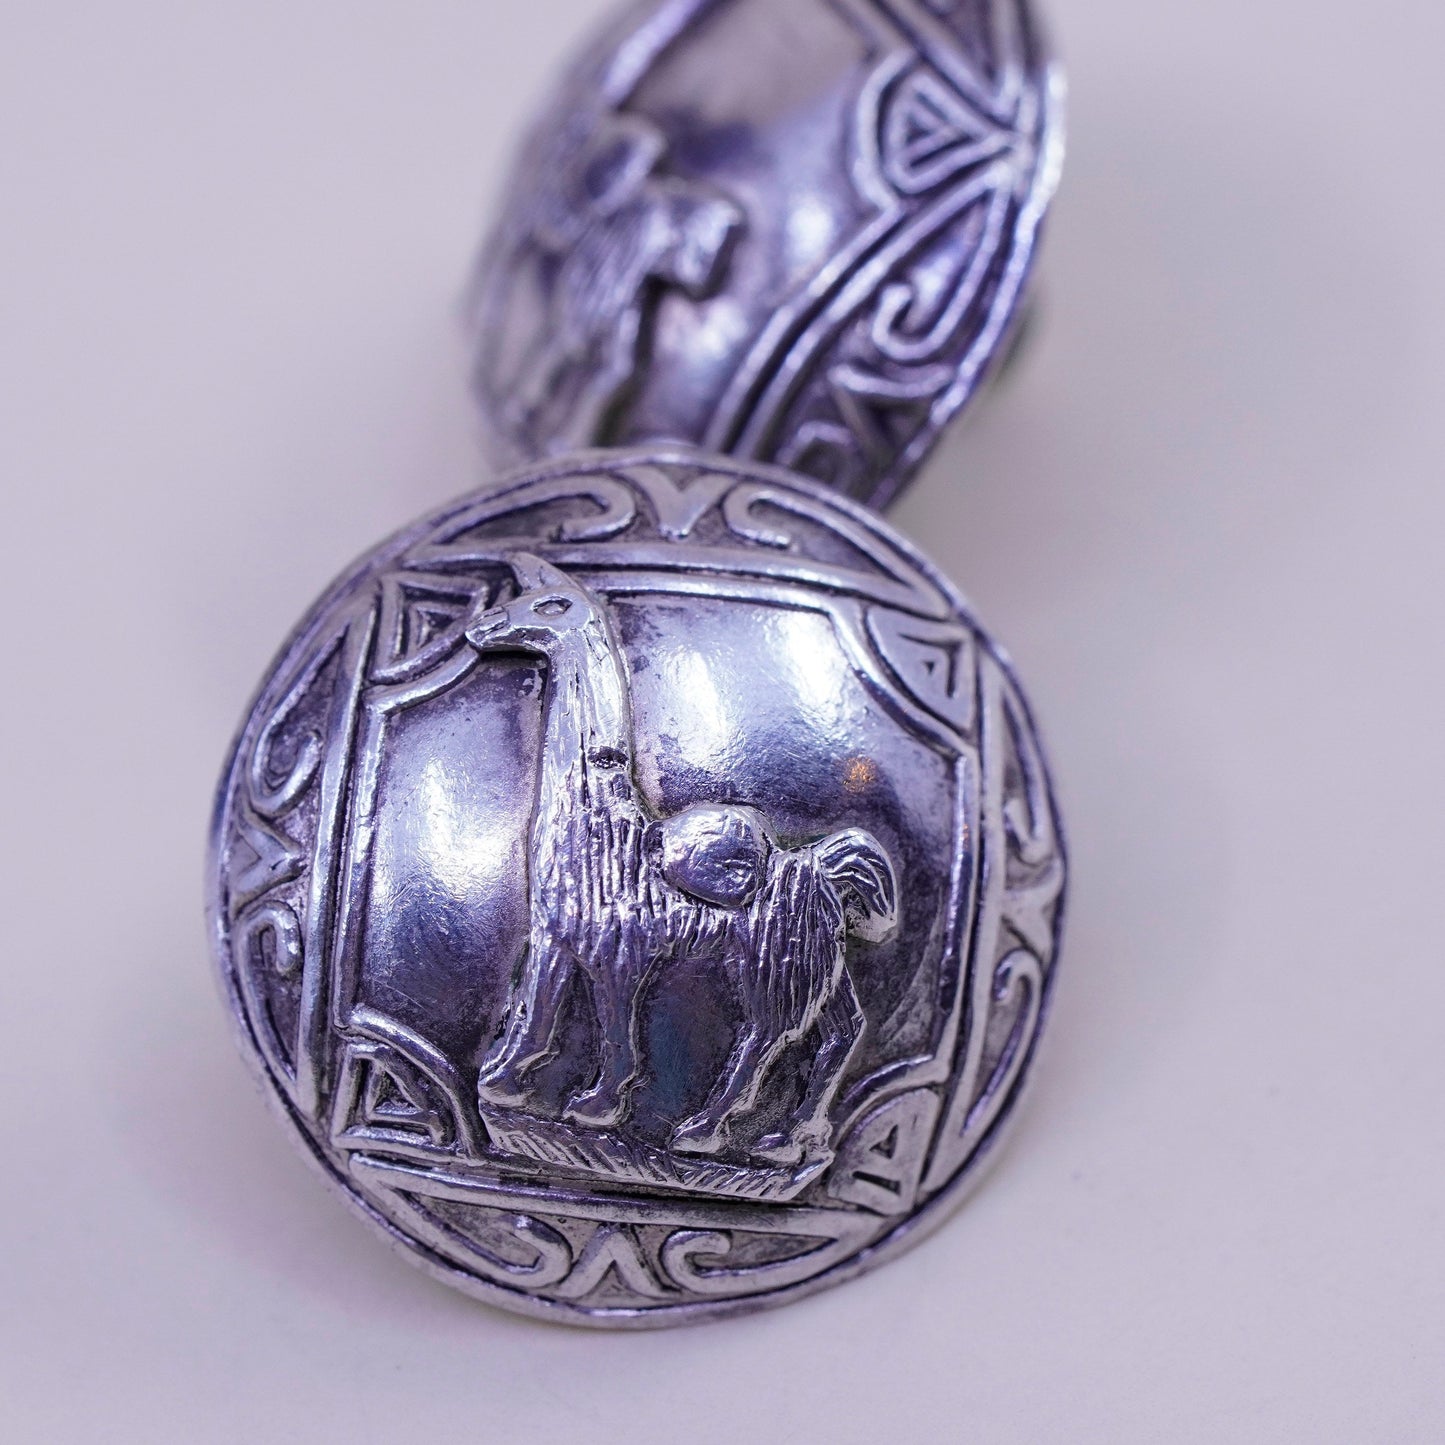 Vintage Sterling silver handmade earrings, 925 screw back llama earrings